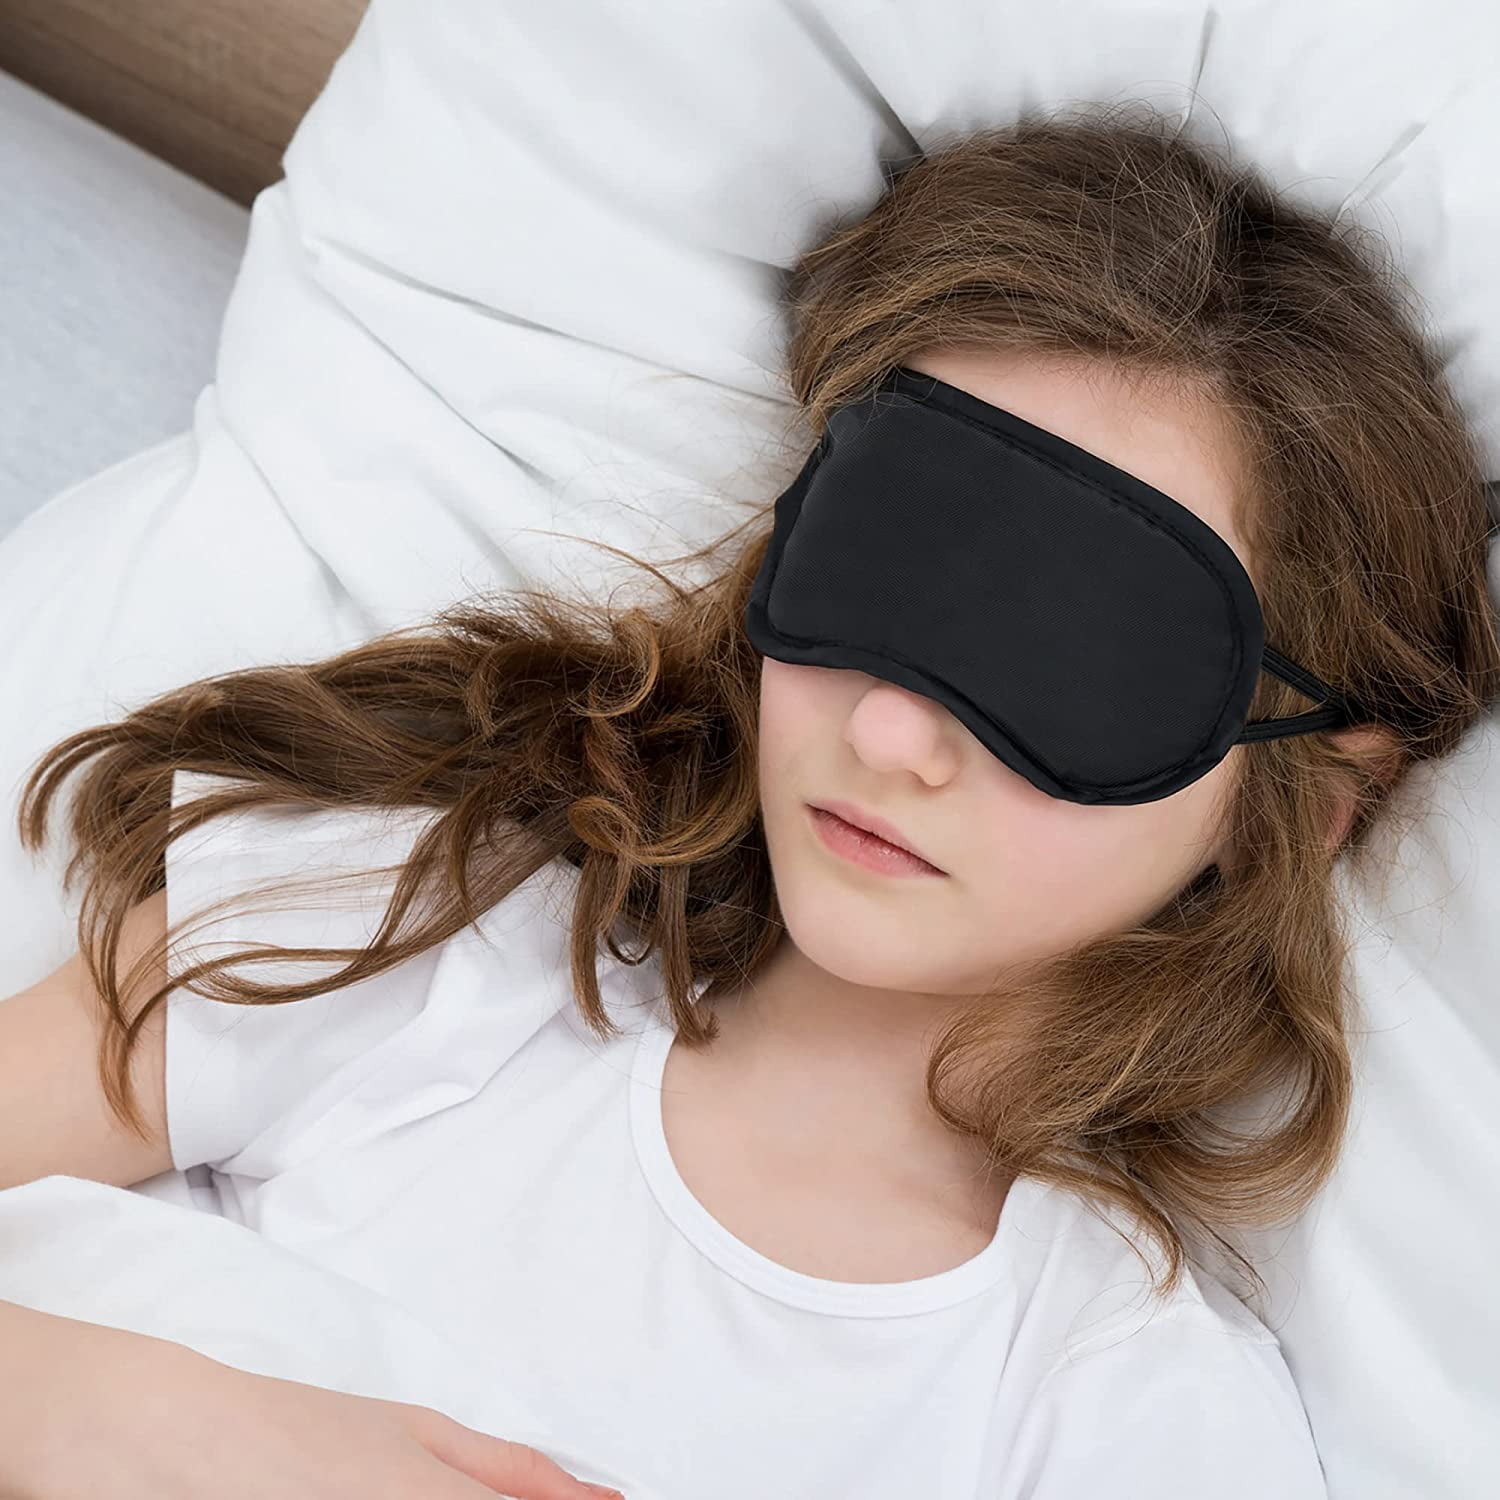  Senkary 12 Pack Blindfolds Sleep Mask Eye Mask Satin